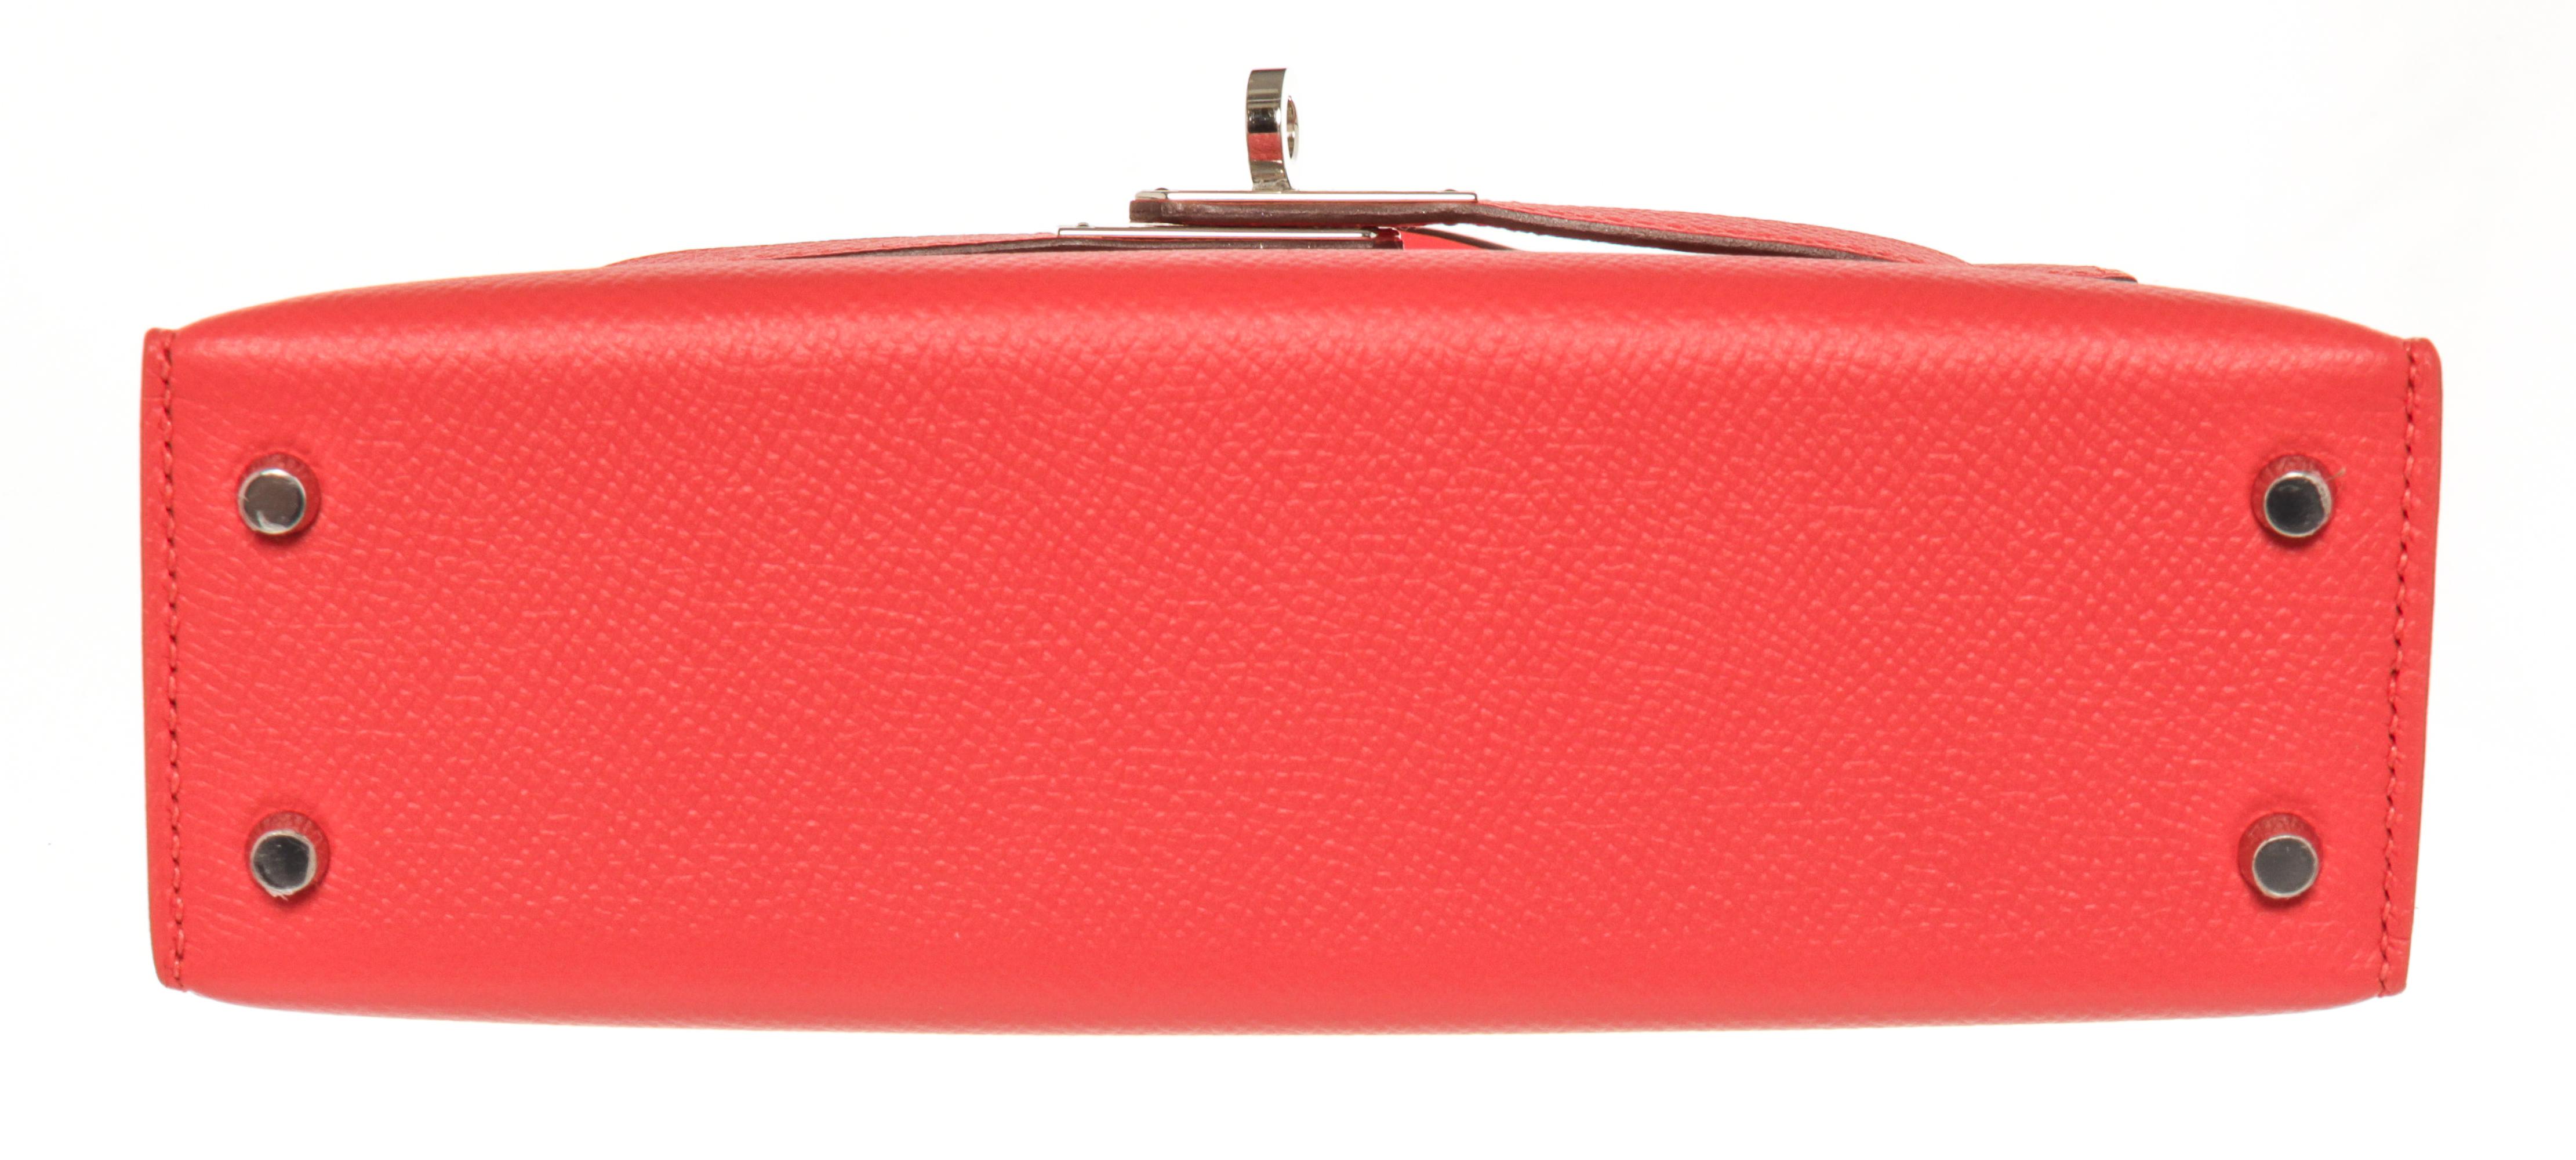 Red Hermes Mini Kelly Rose Jaipur Epsom Leather Satchel Bag